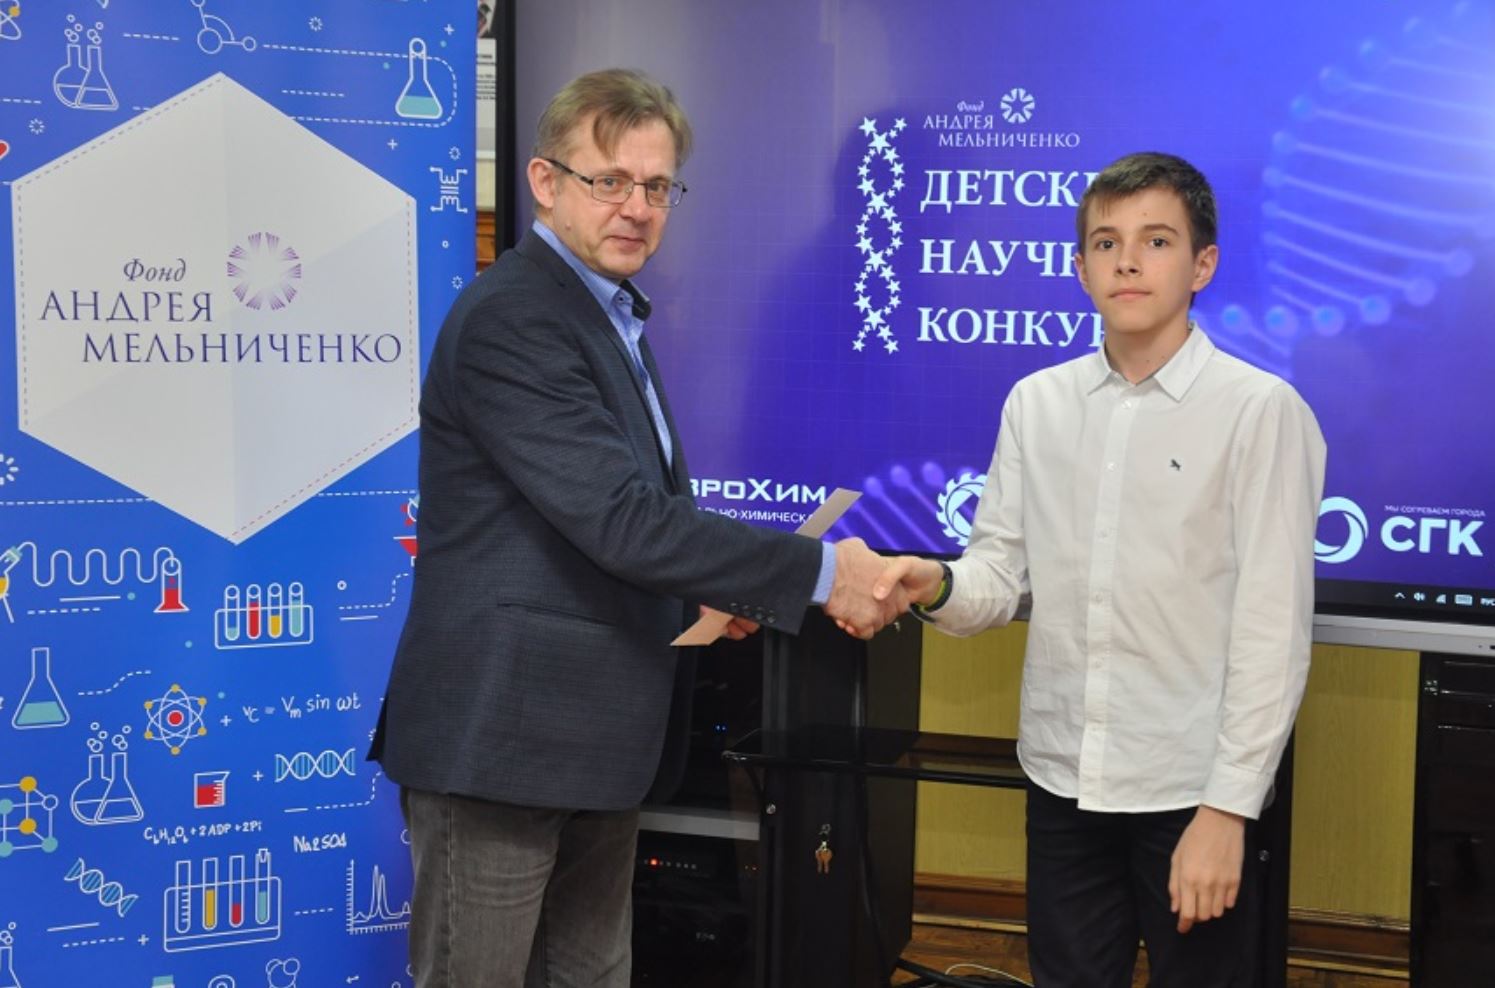 Фонд Андрея Мельниченко - Определены лучшие проекты отборочного этапа ДНК-2022 в Рубцовске